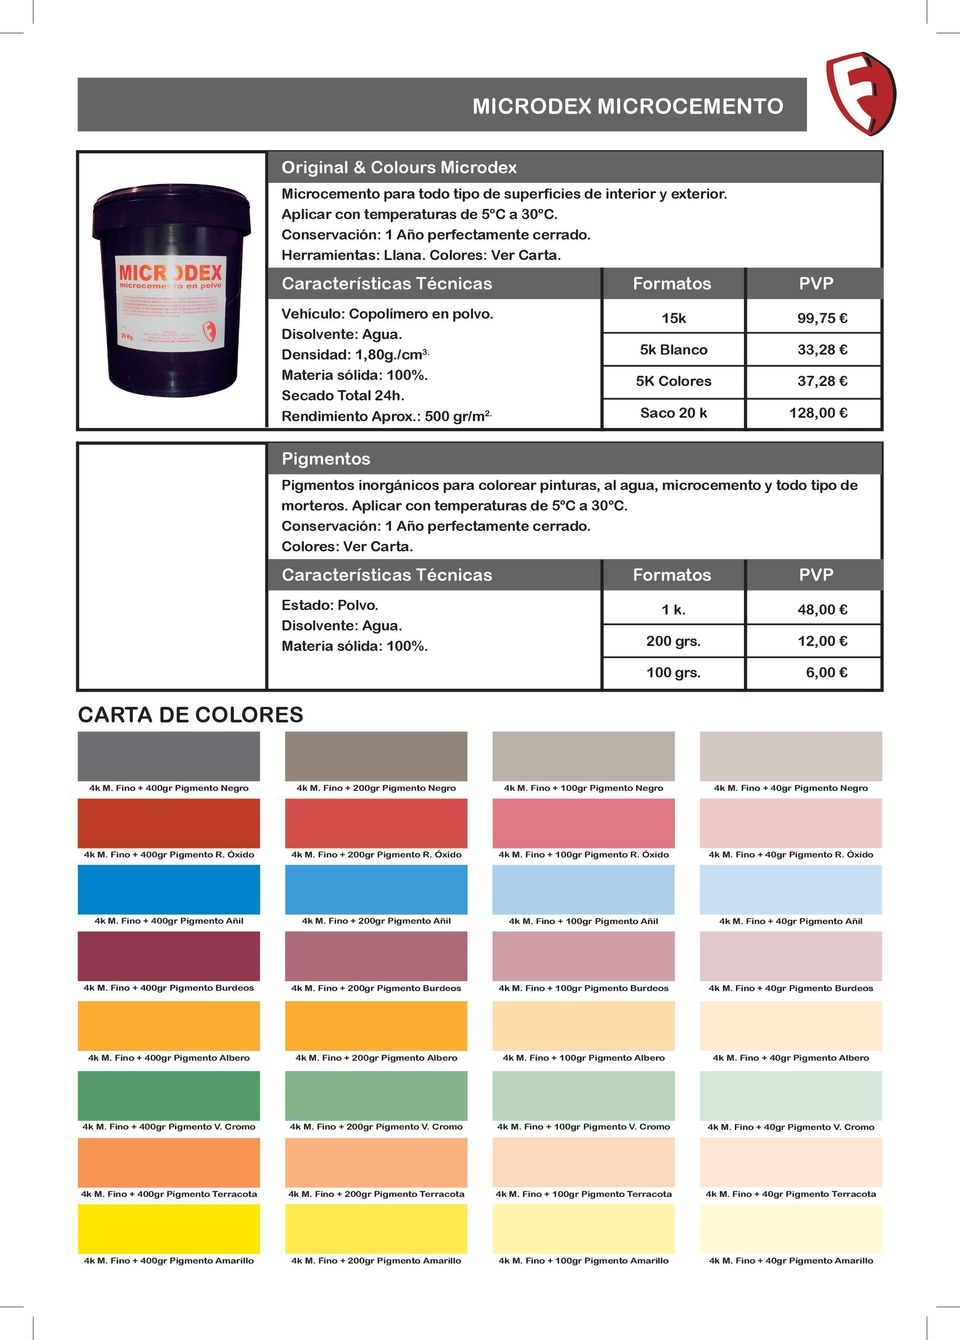 15k 5k Blanco 5K Colores Saco 20 k 99,75 33,28 37,28 128,00 Pigmentos Pigmentos inorgánicos para colorear pinturas, al agua, microcemento y todo tipo de morteros.